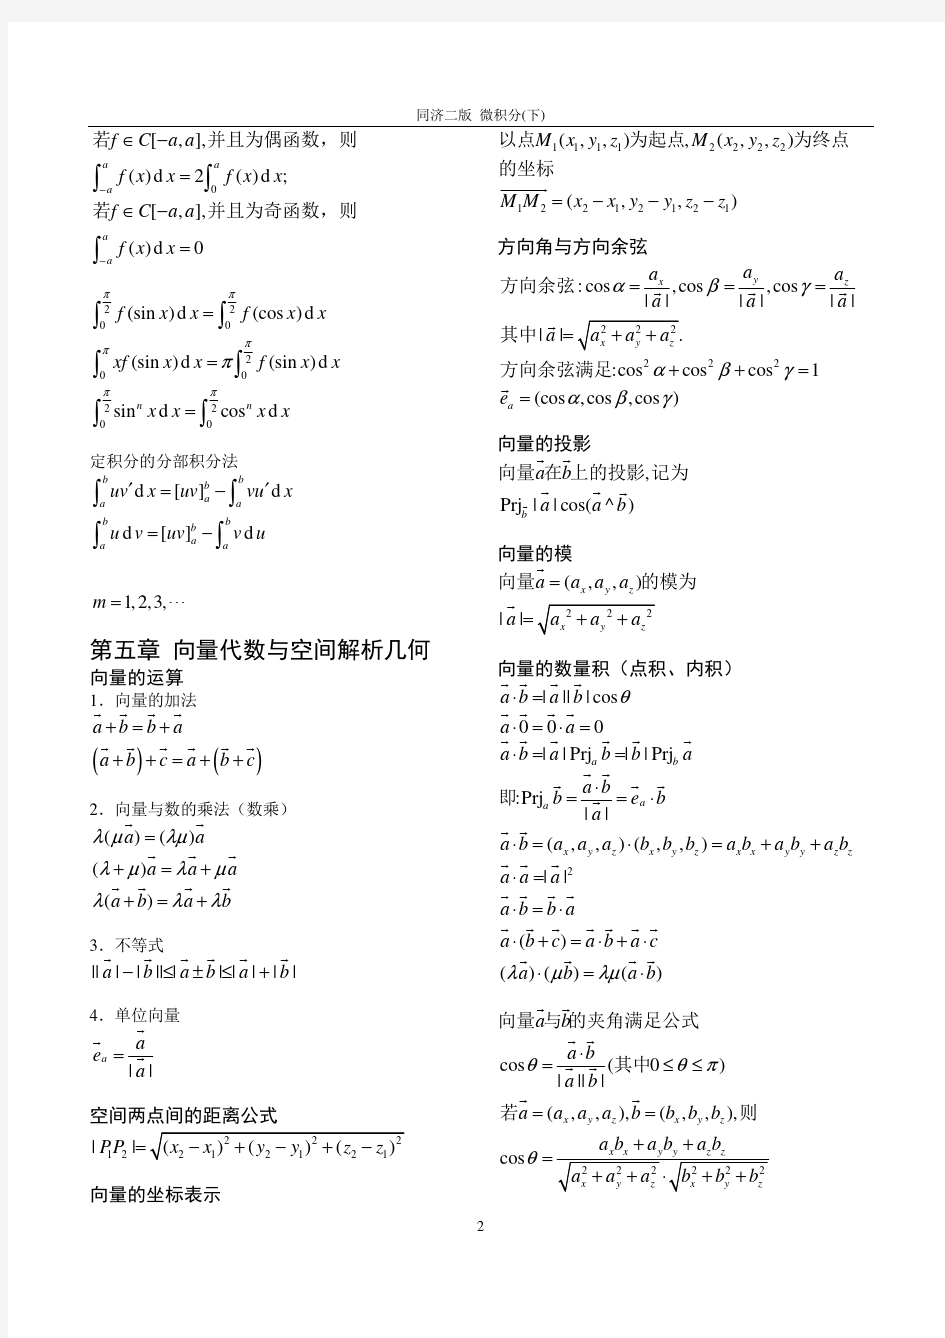 微积分常用公式及运算法则(下册).